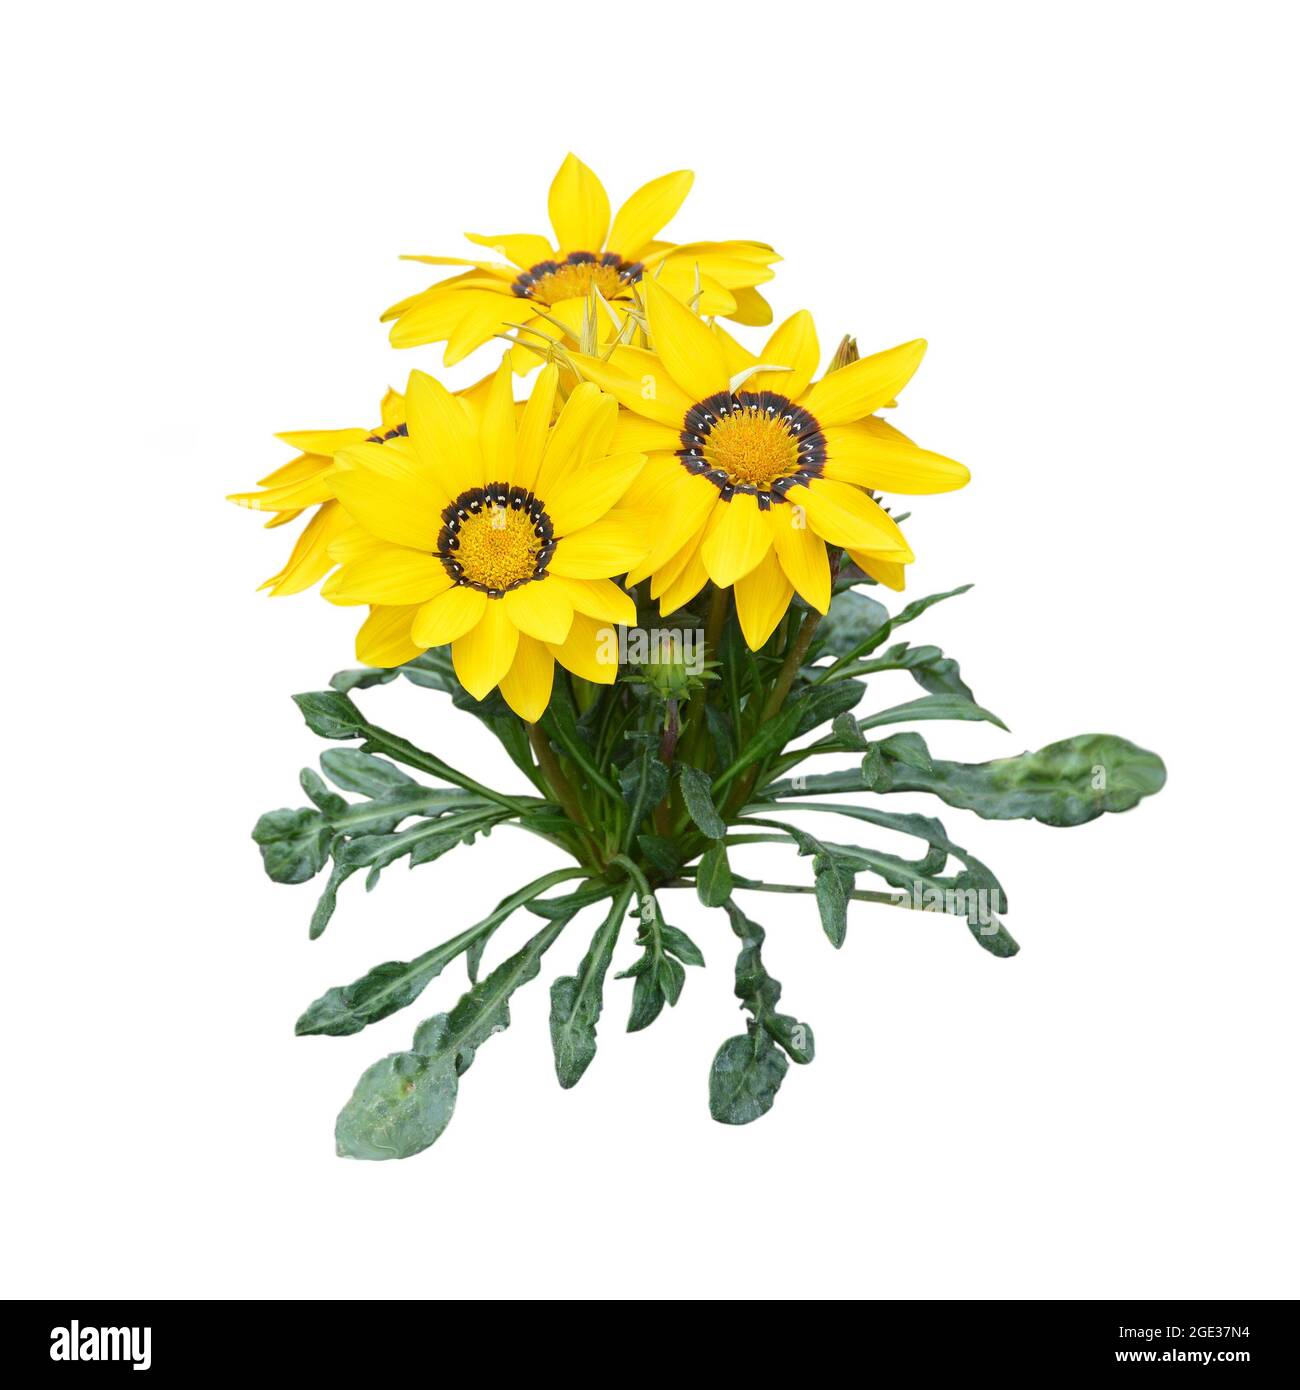 Yellow gazania flower plant isolated on white background Stock Photo